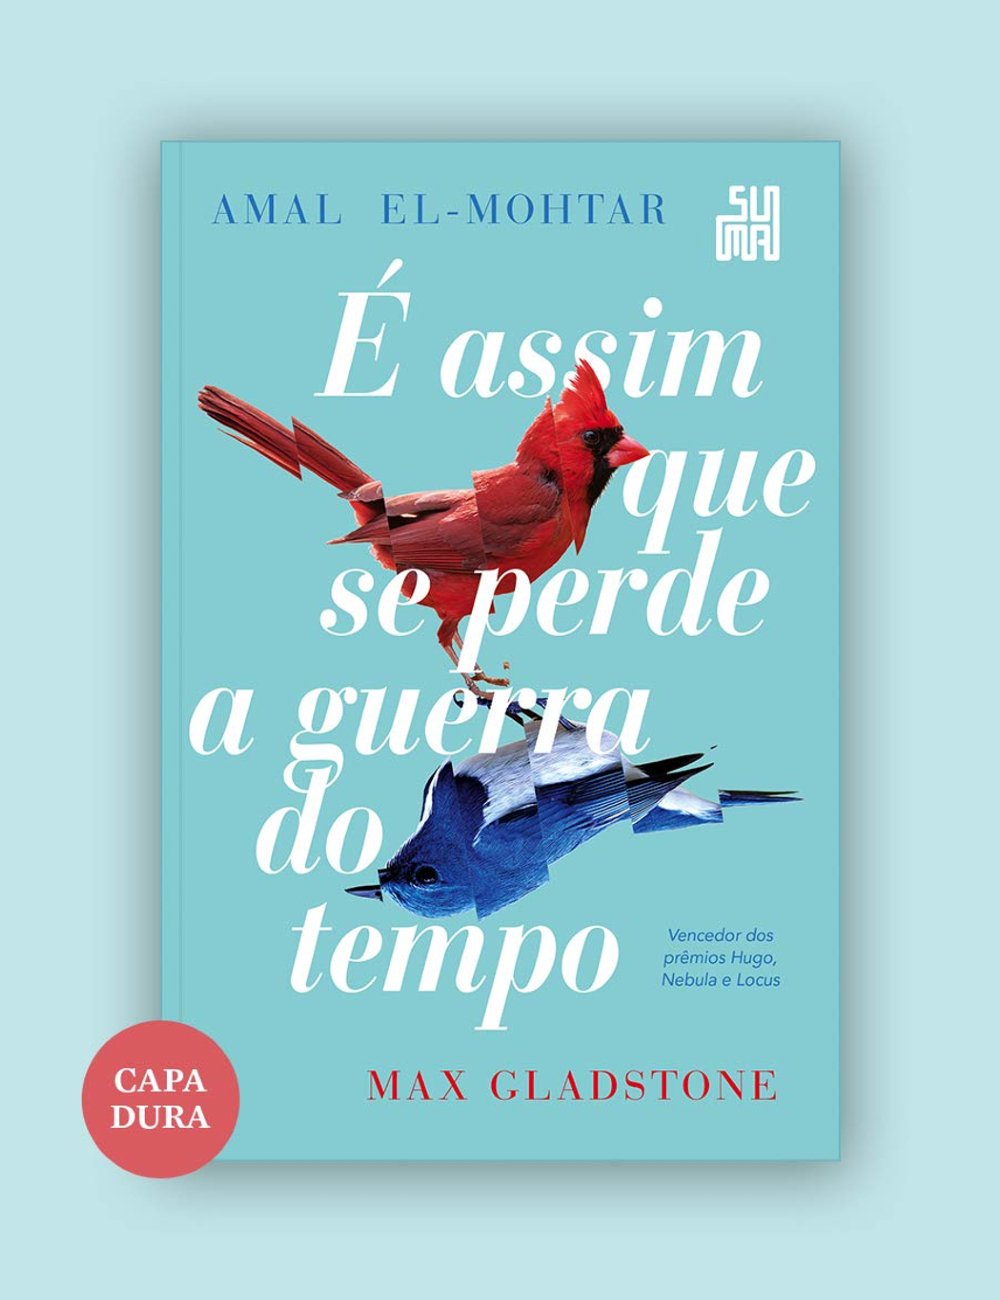 É Assim que se Perde a Guerra do Tempo - Amal El-Mohtar e Max Gladstone - livros bons - livros bons - livros bons - livros bons - https://stealthelook.com.br